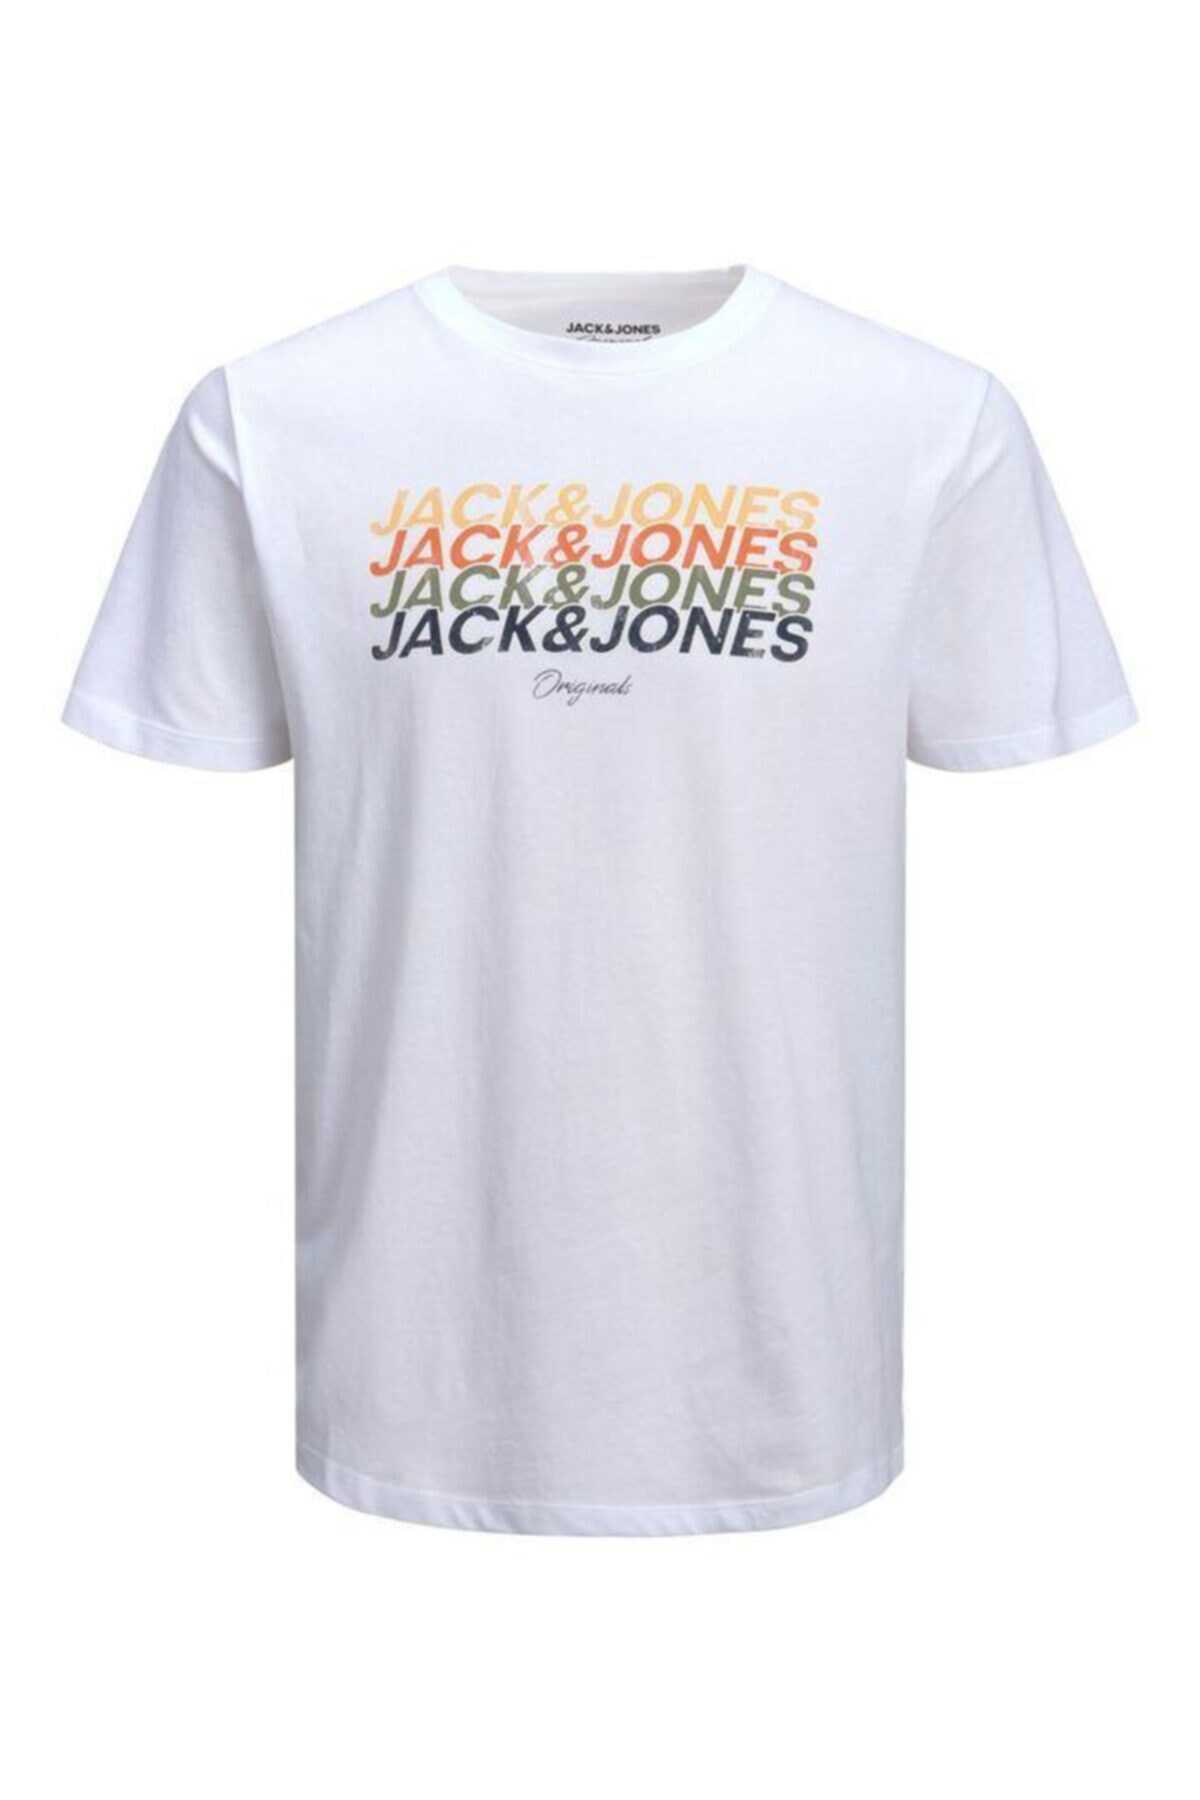 تیشرت مردانه یقه گرد چاپ دار سفید برند Jack & Jones